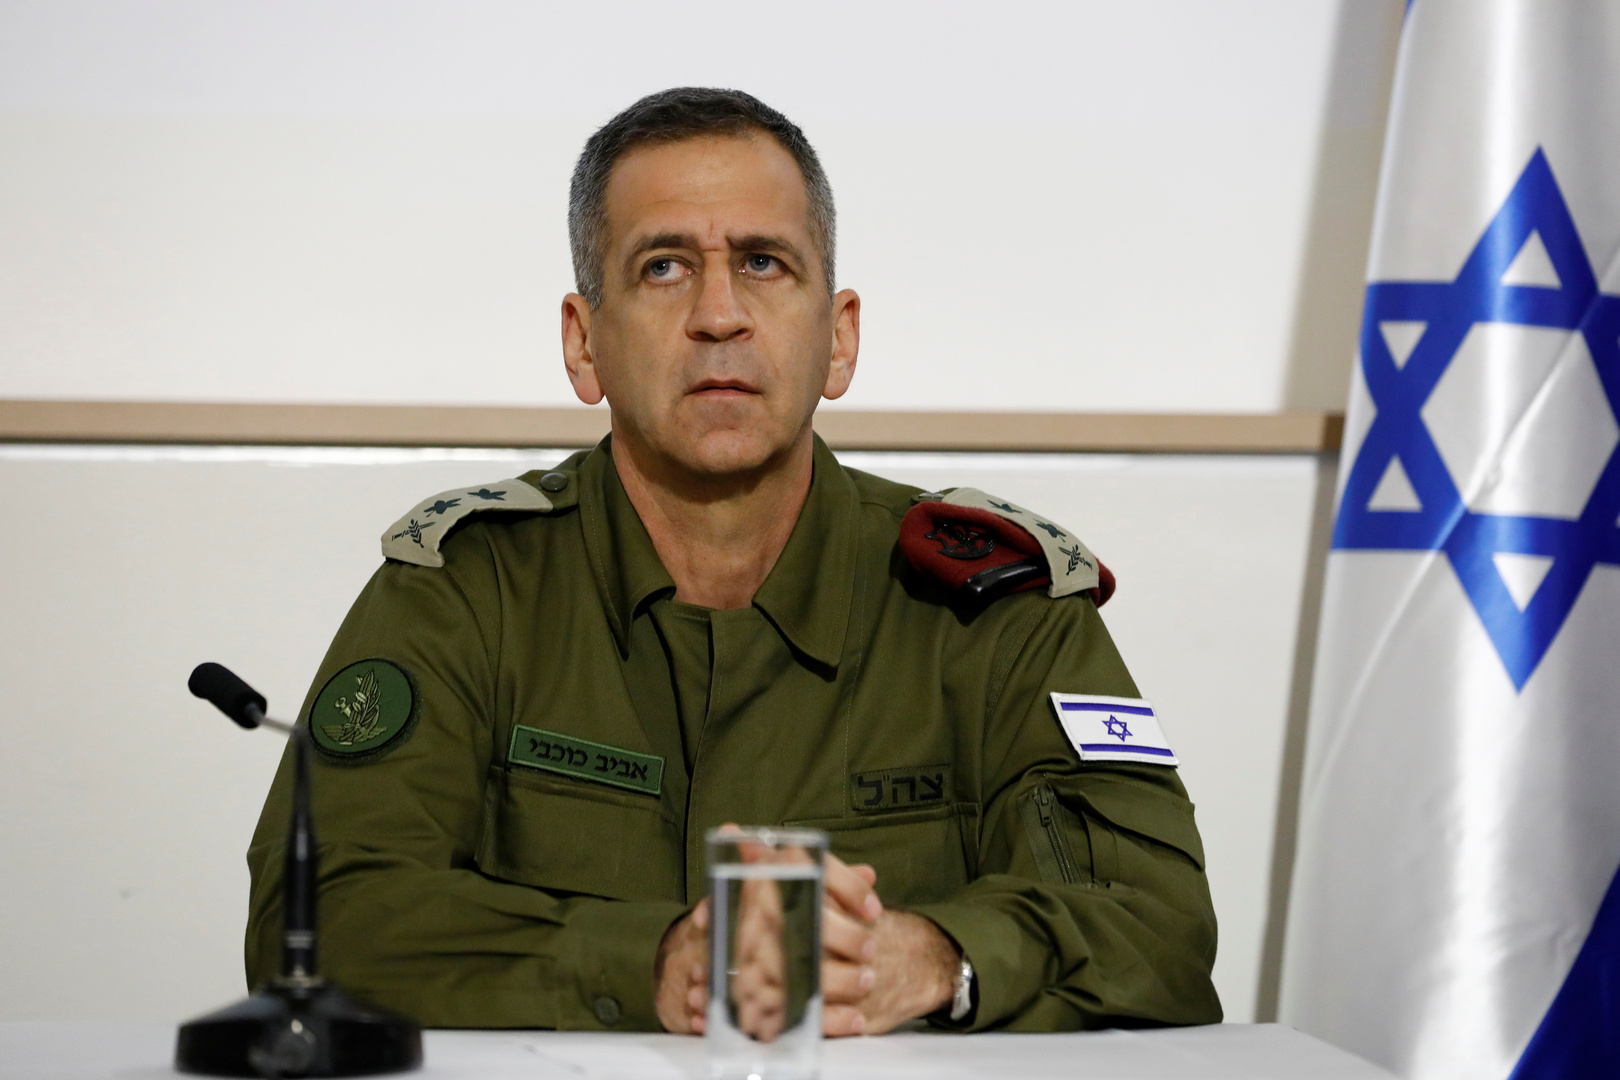 محلل إسرائيلي: إخفاقات كوخافي سببها إصراره على "ضرب رأسه بالحائط"